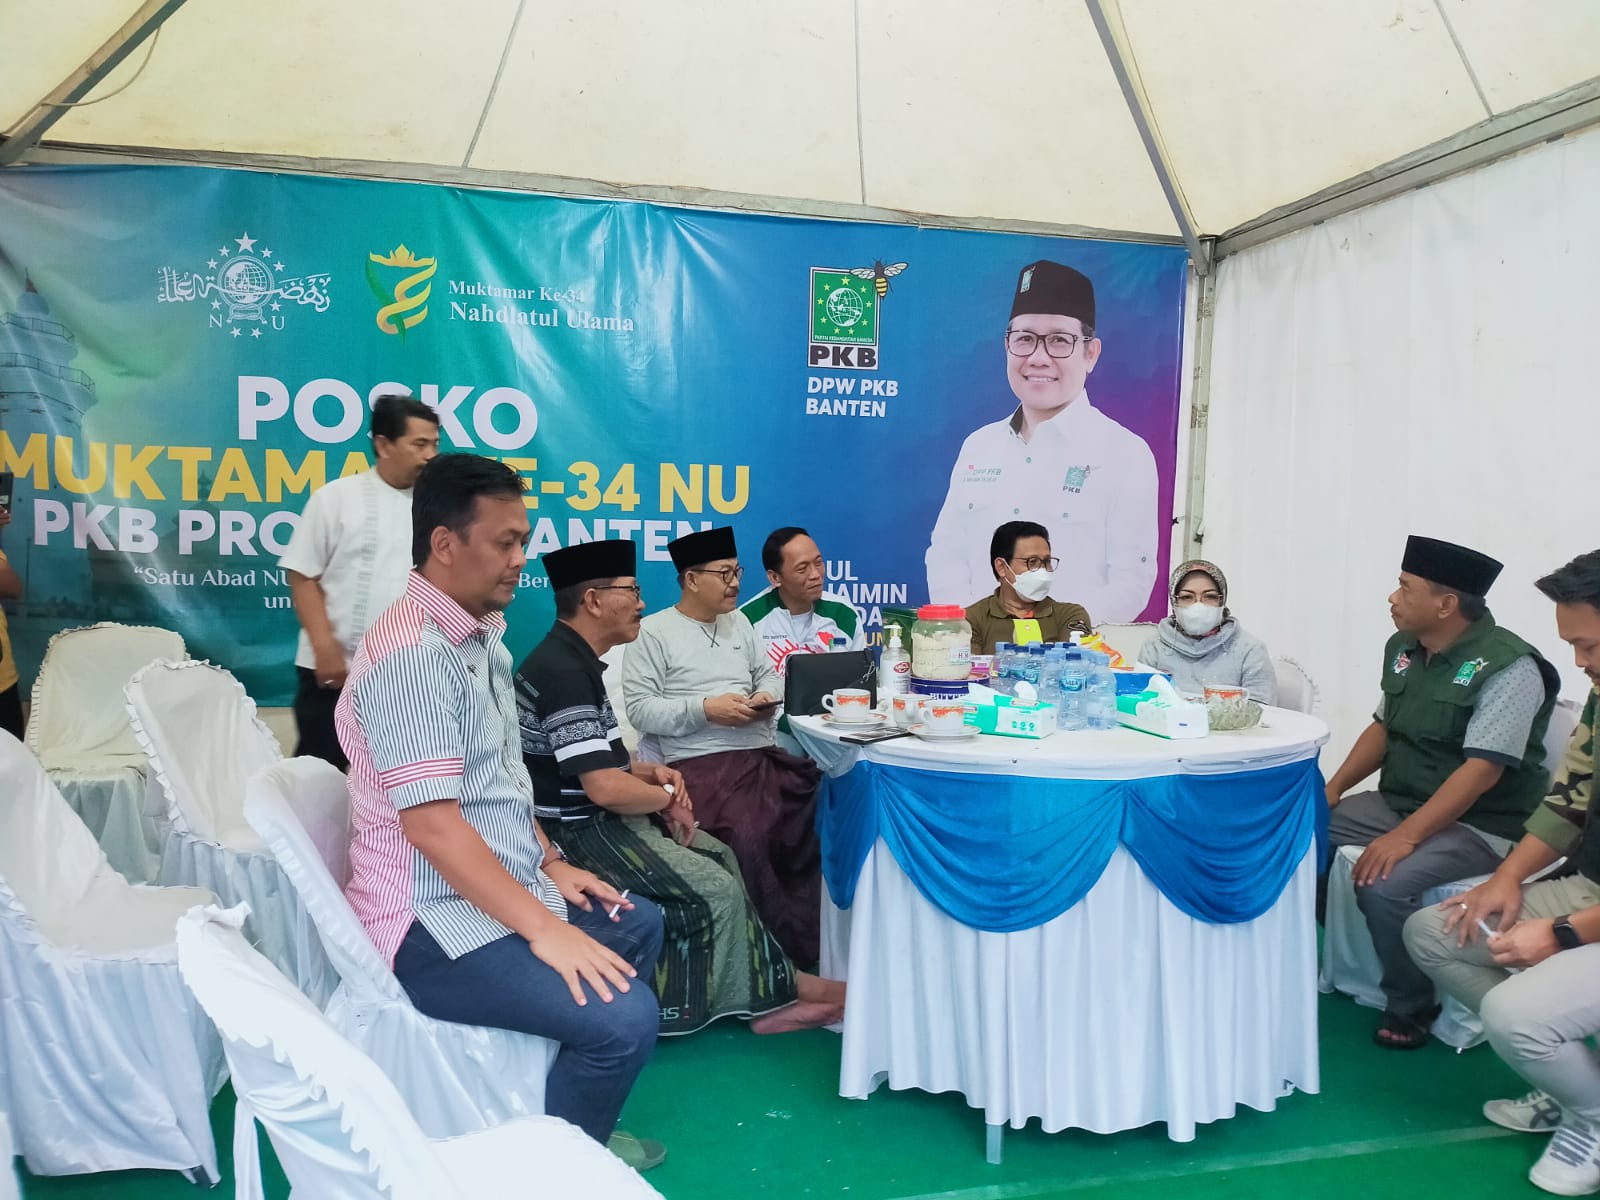 DPW PKB Banten Dirikan Pokso Muktamar NU 34; Ribuan Muktamirin, DPR RI & Menteri Kunjungi Posko